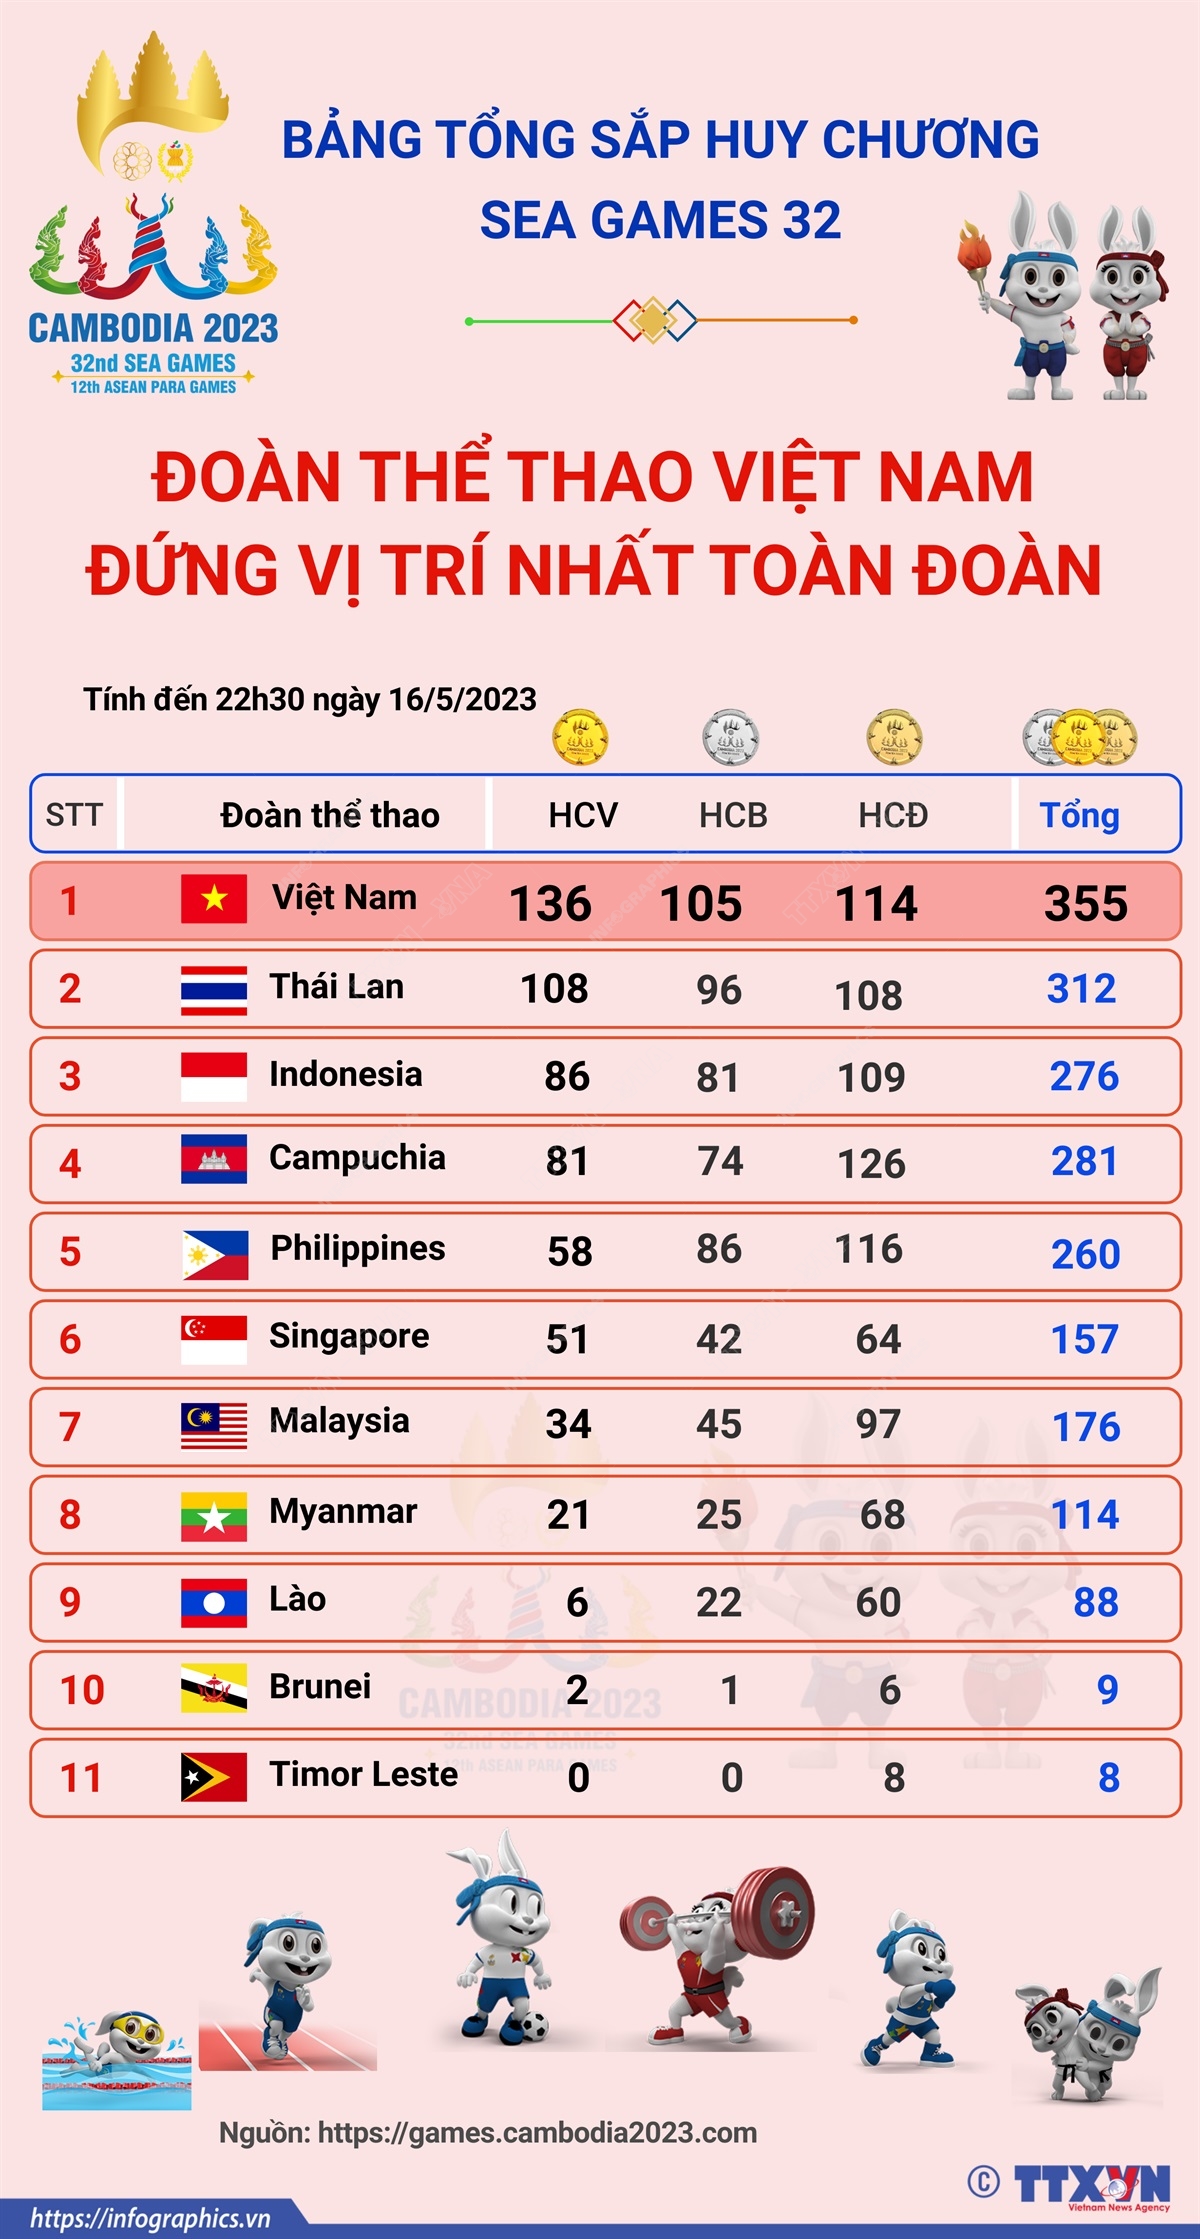 SEA Games 32: Đoàn thể thao Việt Nam đứng đầu bảng tổng sắp huy chương